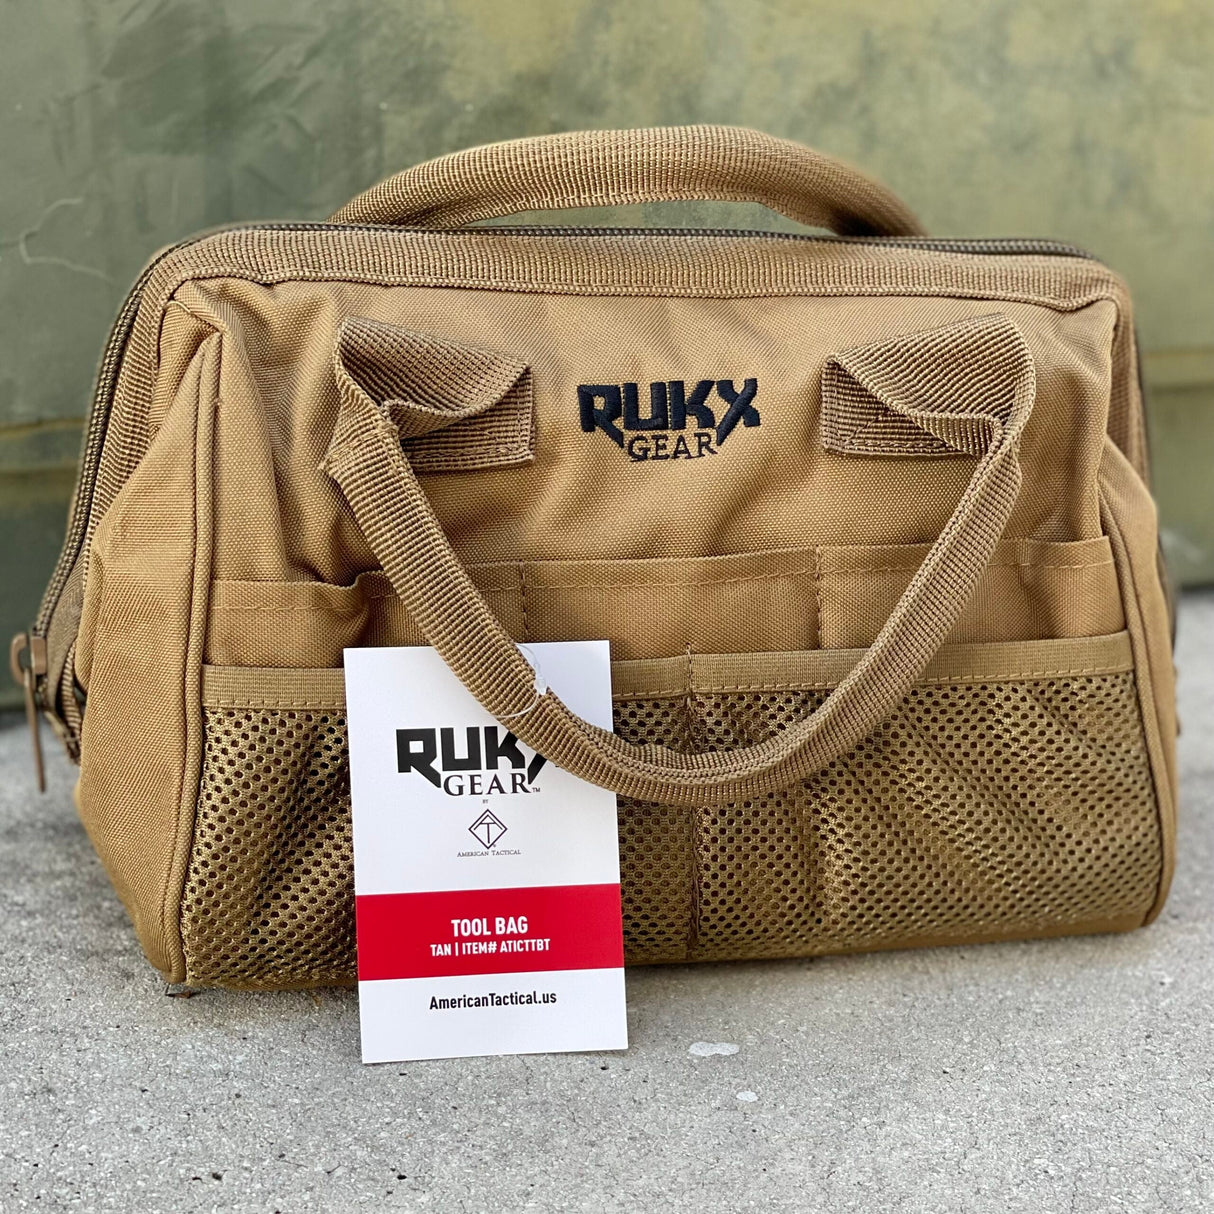 ATI Tool Bag RUKX Gear - Tan